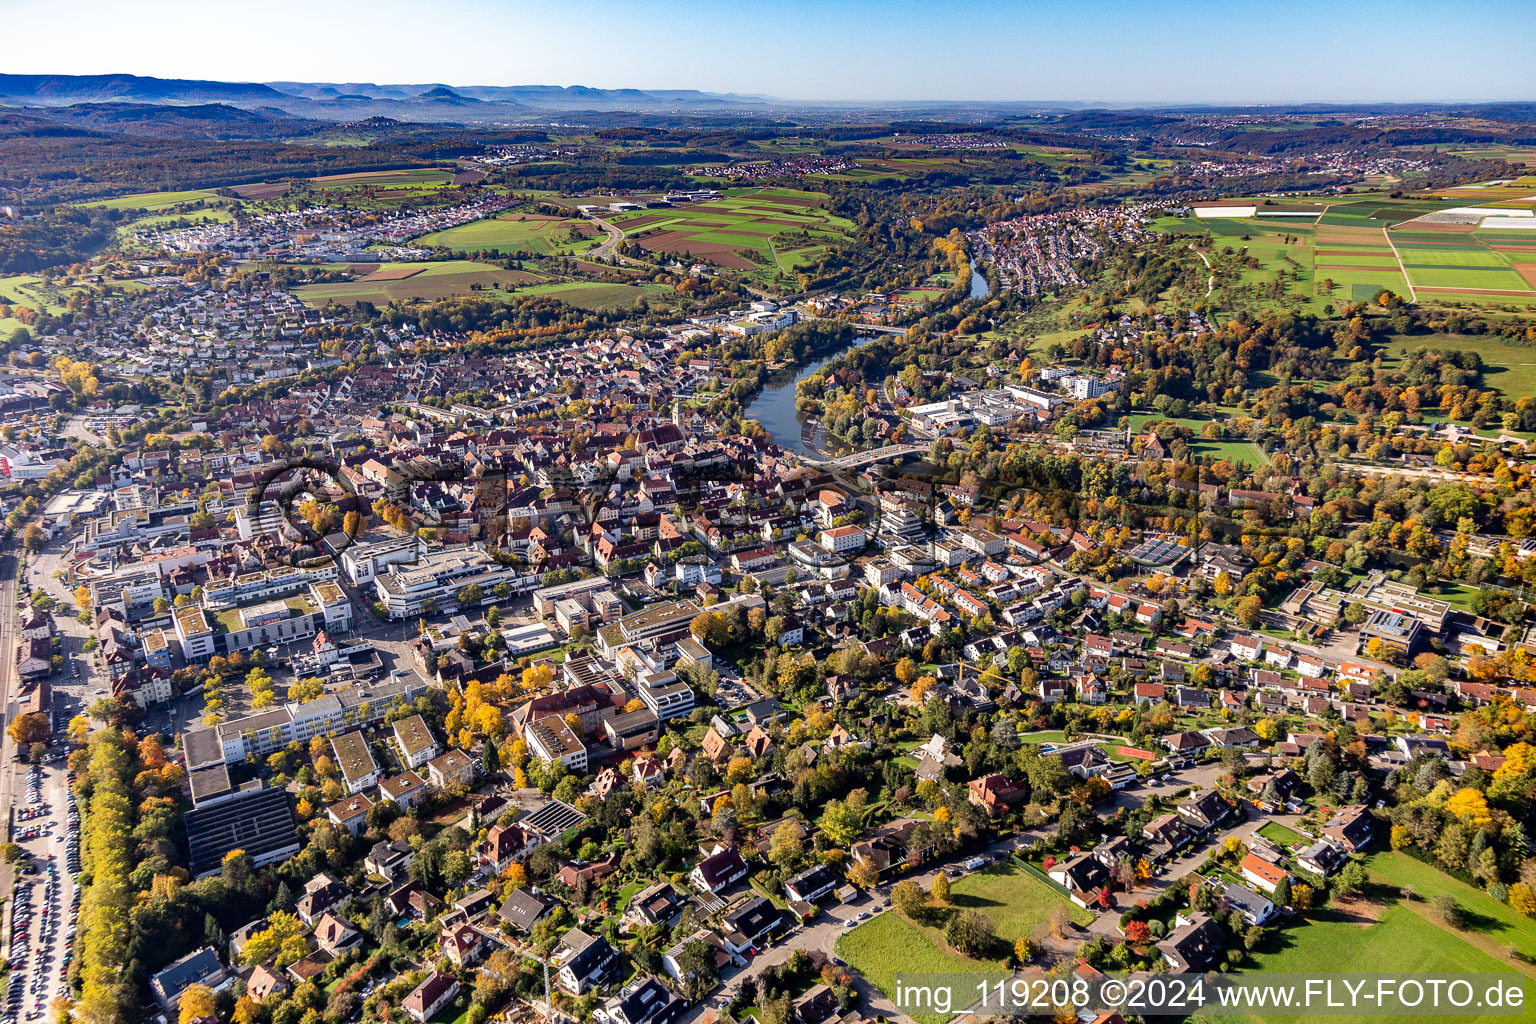 Luftbild von Ortskern am Uferbereich des Neckar - Flußverlaufes in Nürtingen im Bundesland Baden-Württemberg, Deutschland